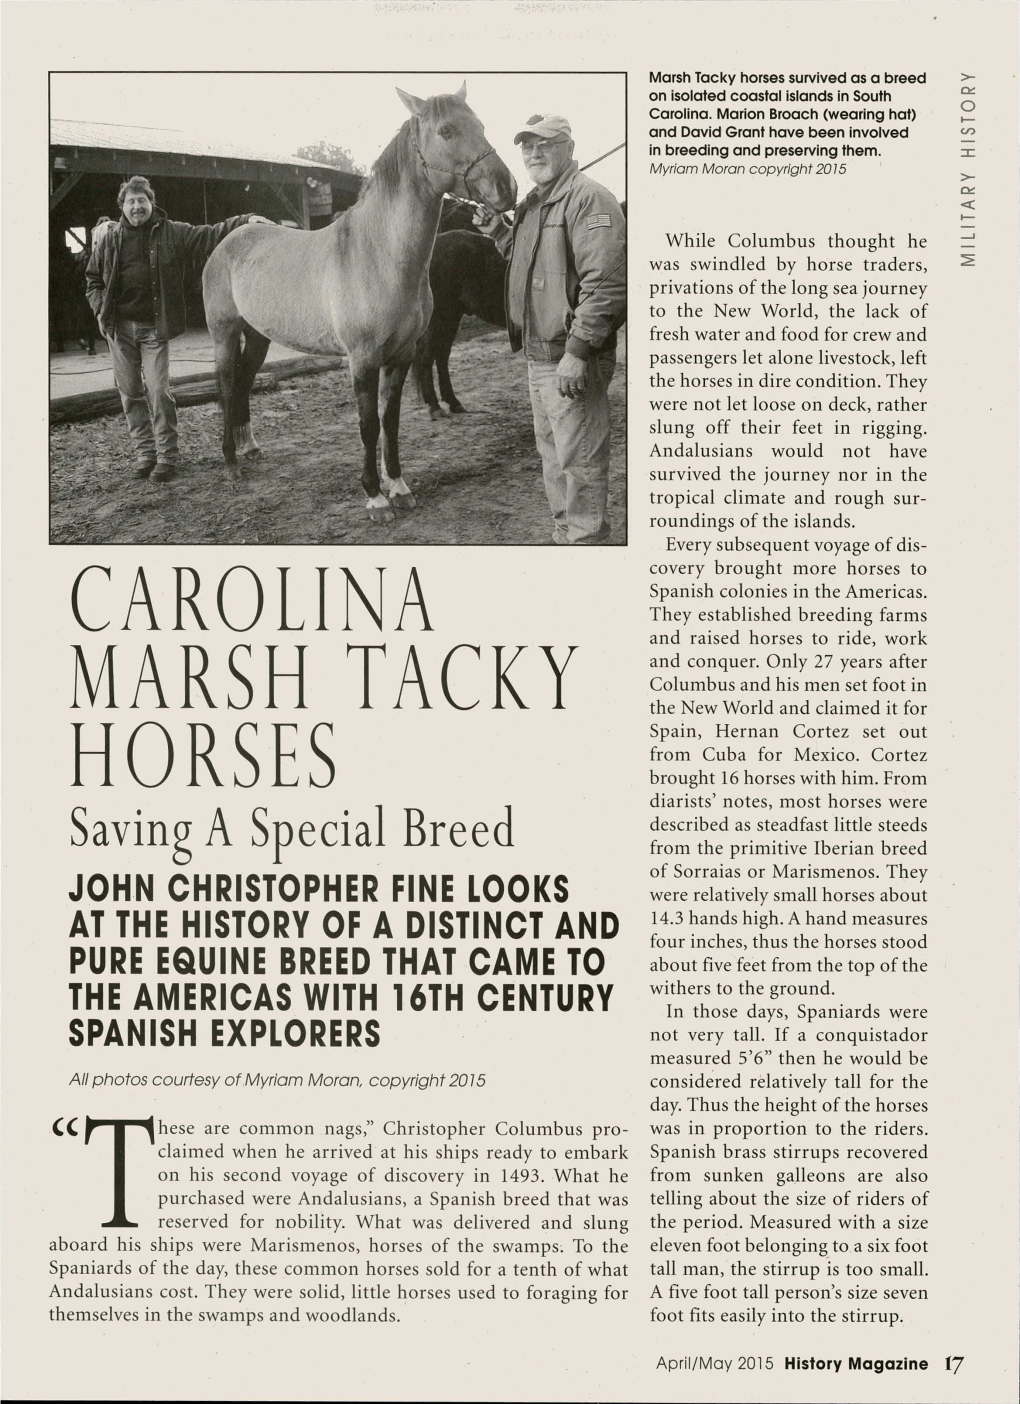 Carolina Marsh Tacky Horses